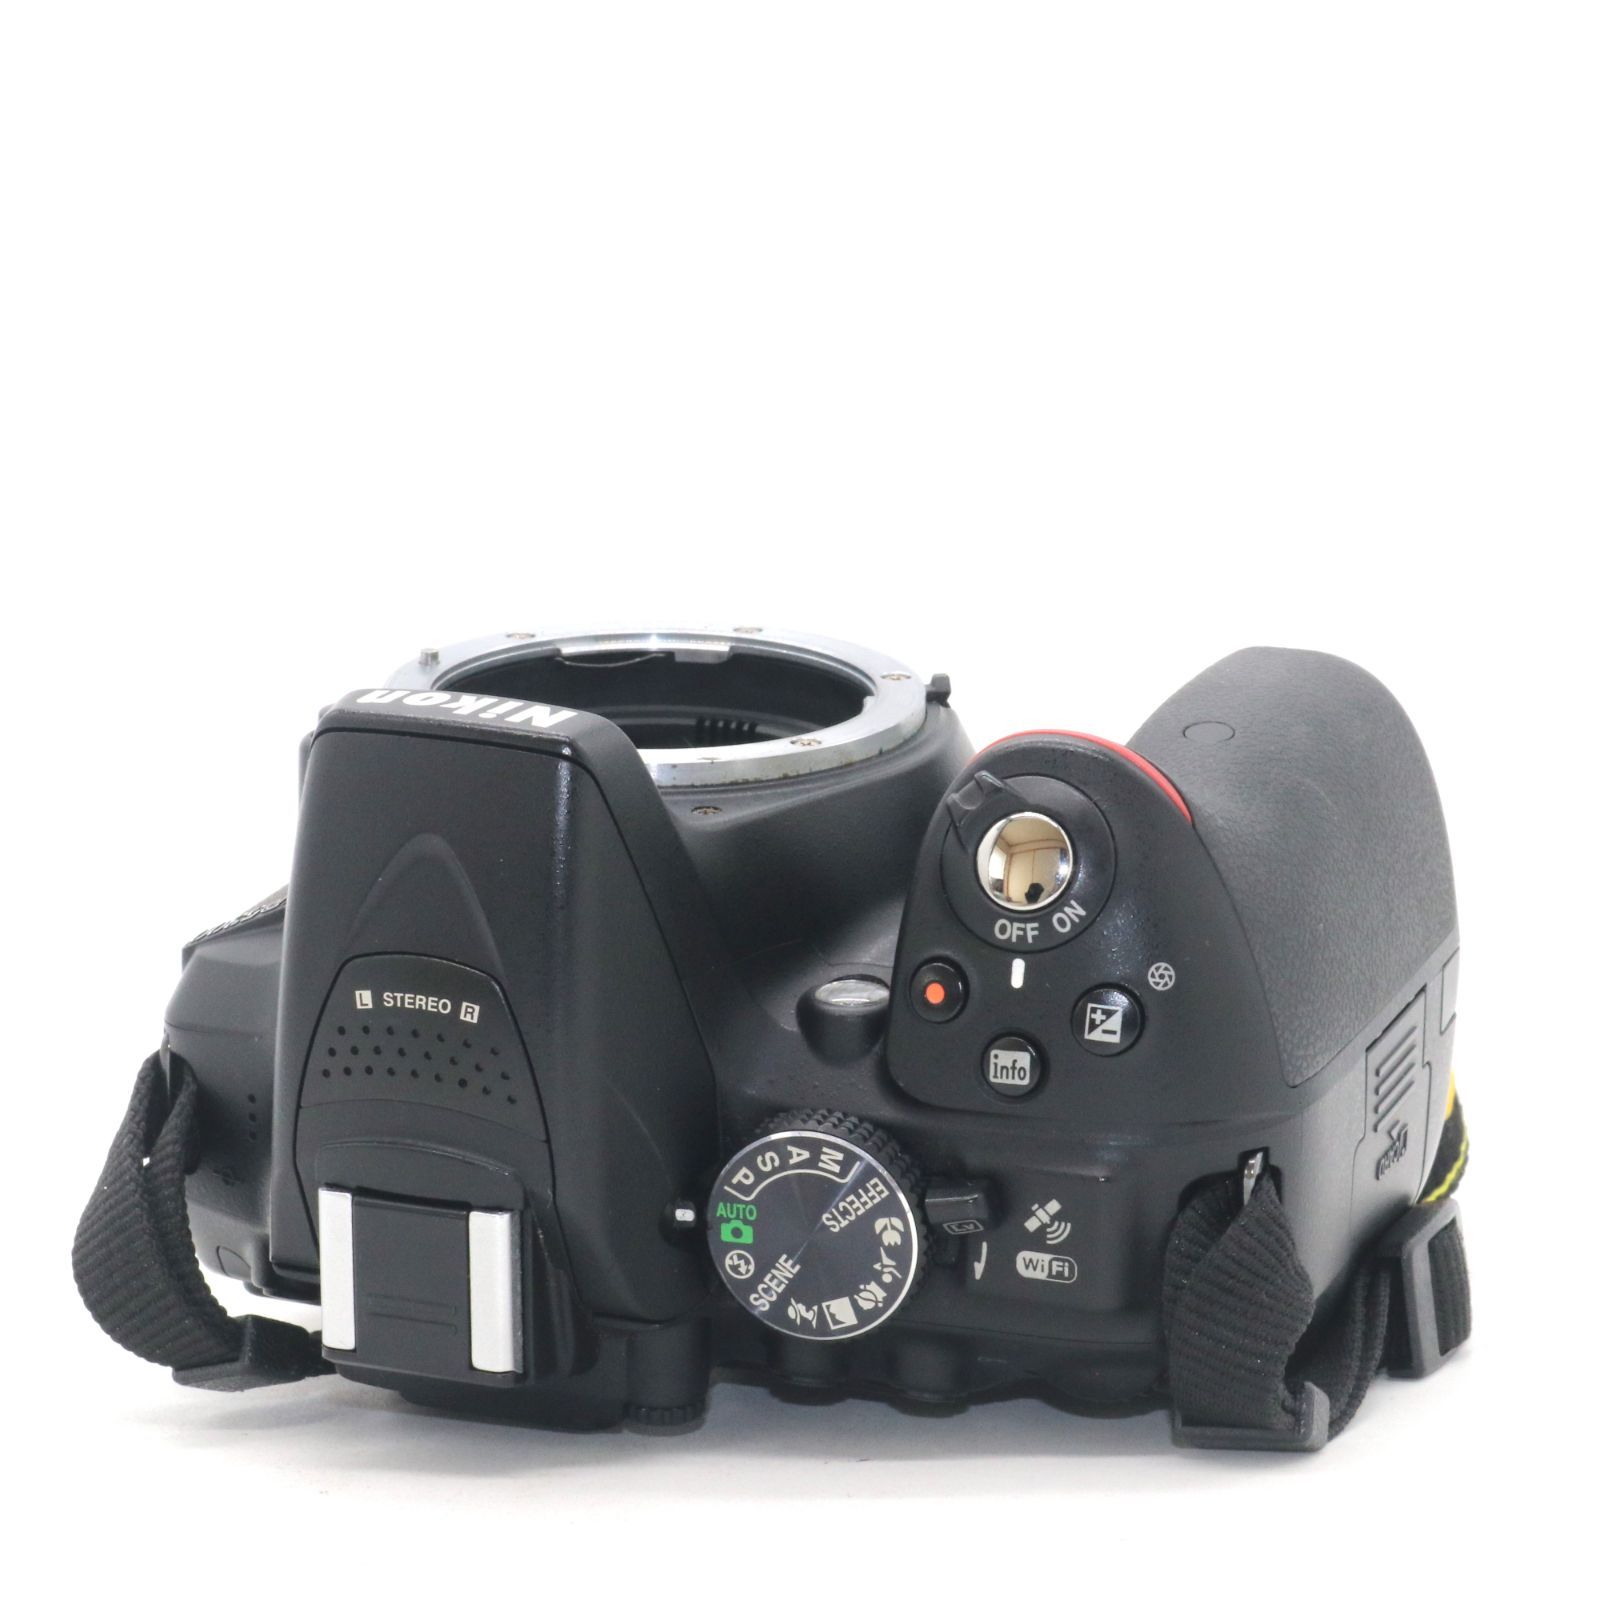 良品 4157ショット 予備バッテリー付き Nikon デジタル一眼レフカメラ D5300 ブラック 2400万画素 3.2型液晶 D5300BK  PitchCam 一部の商品で発送遅延中 メルカリ